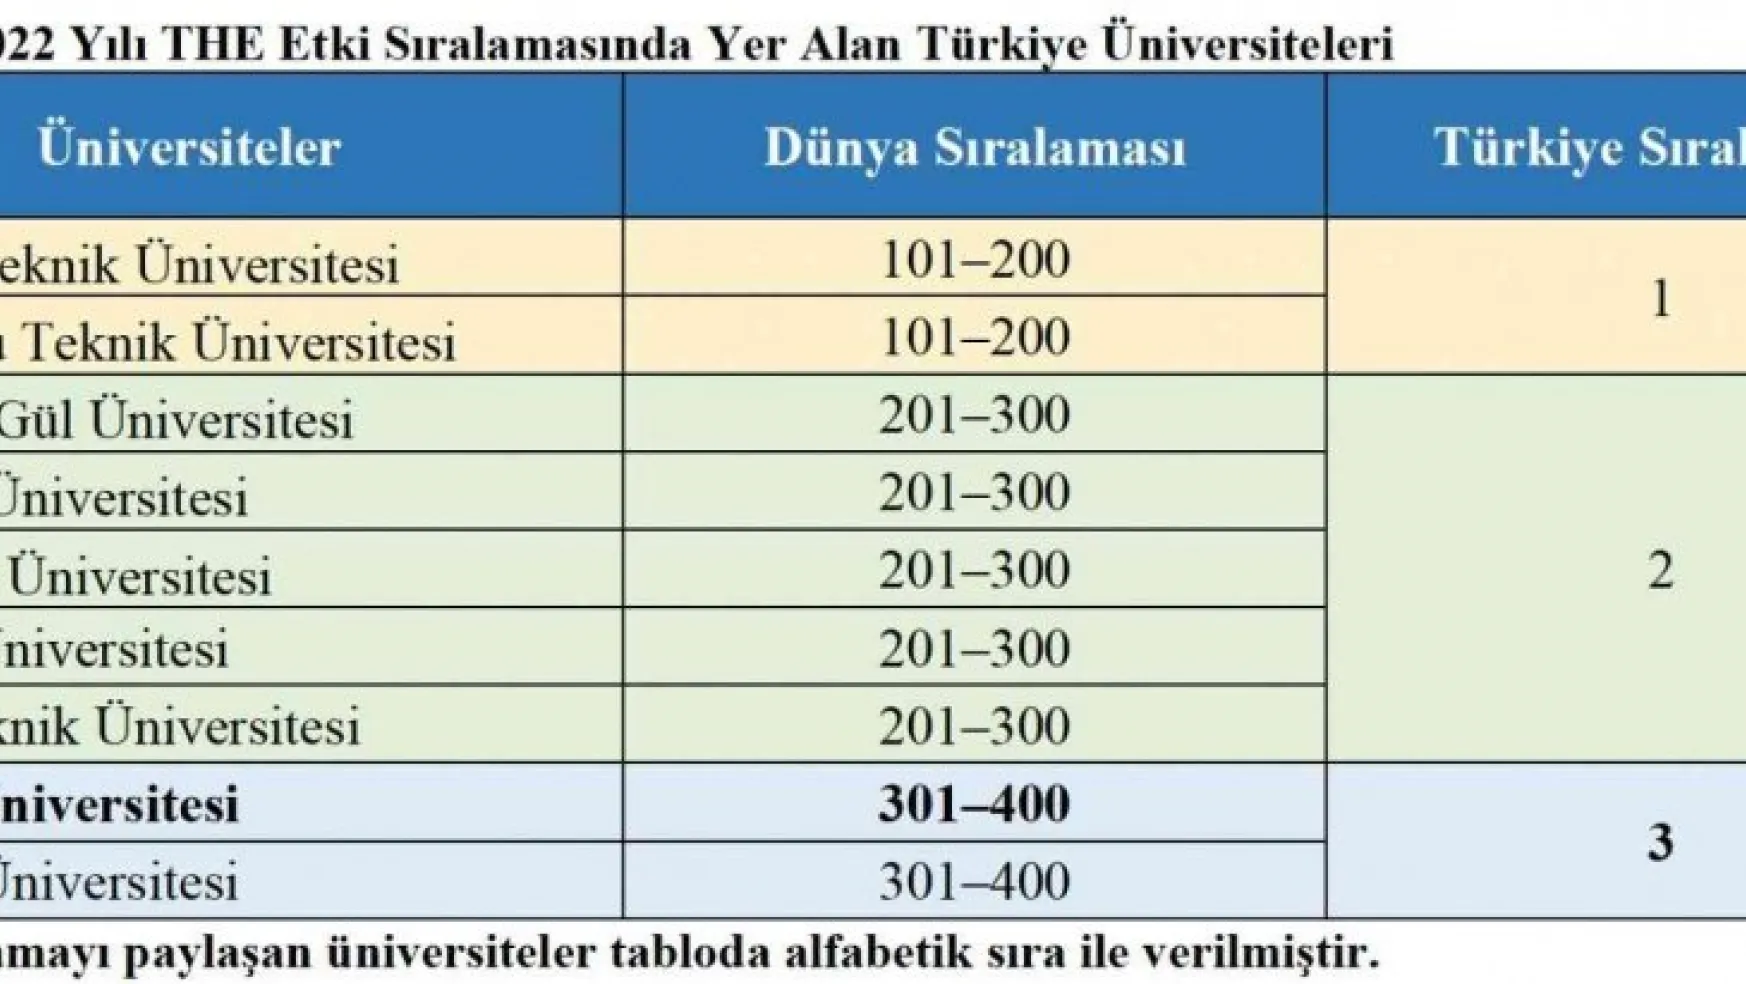 Erciyes Üniversitesi'nin THE 2022 Yılı Etki Sıralamasındaki Başarısı